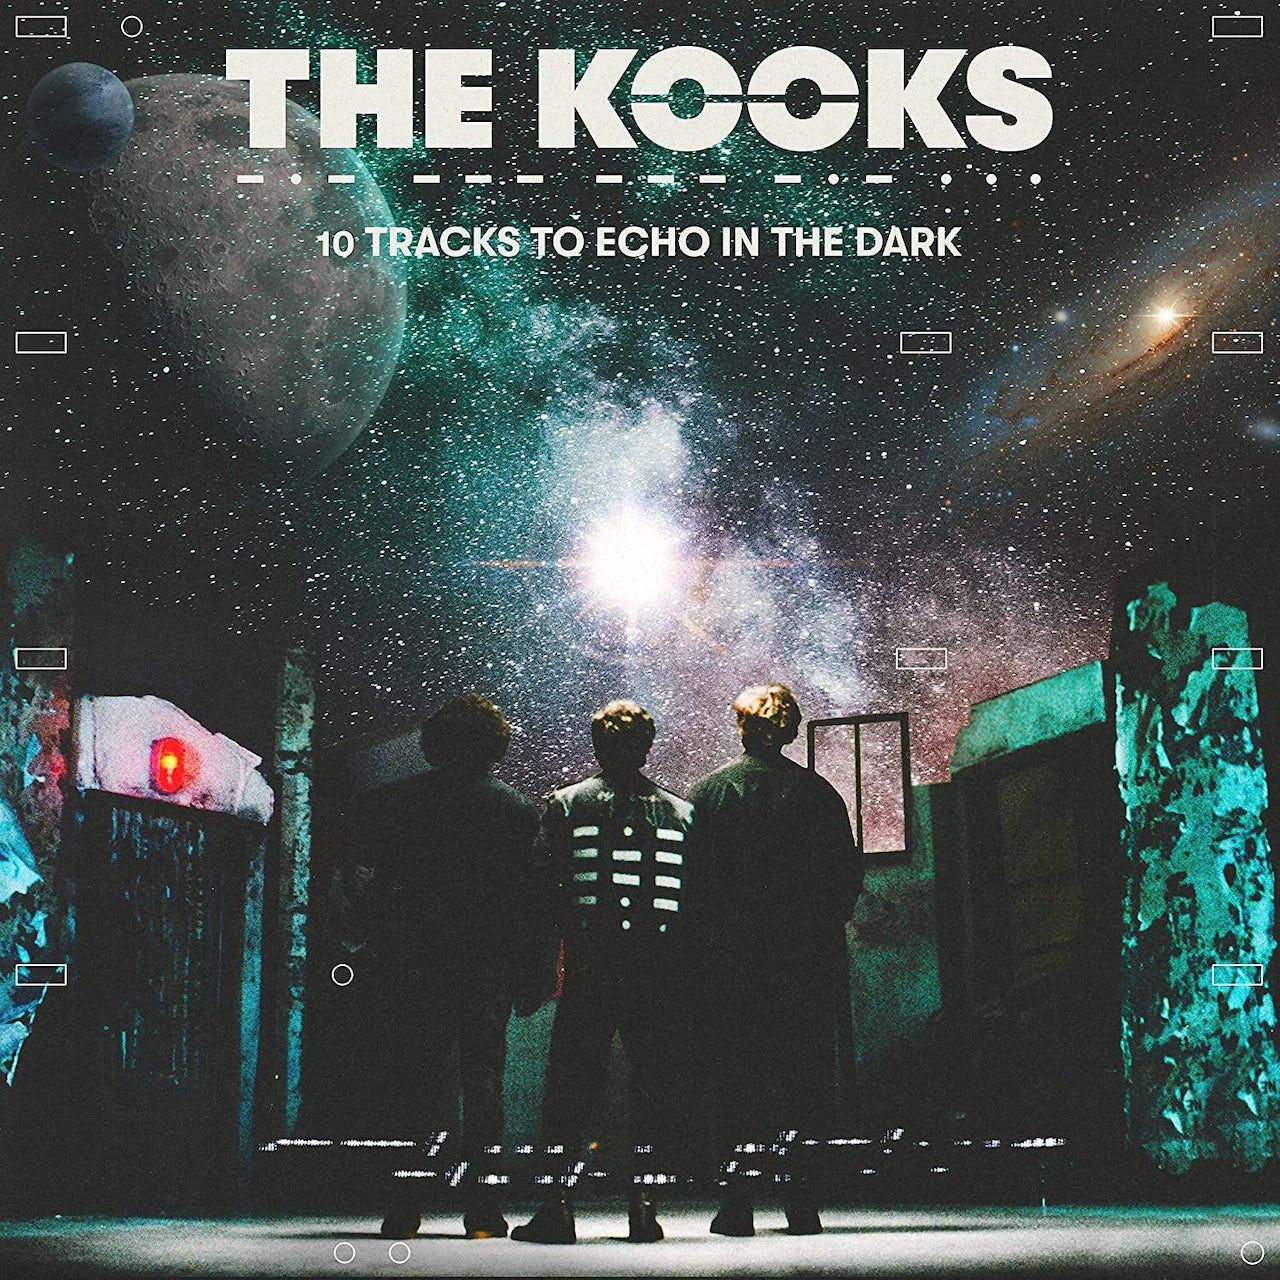 Виниловая пластинка Kooks, The, 10 Tracks To Echo In The Dark (5056167168423) рок sony music kooks the 10 tracks to echo in the dark black vinyl lp